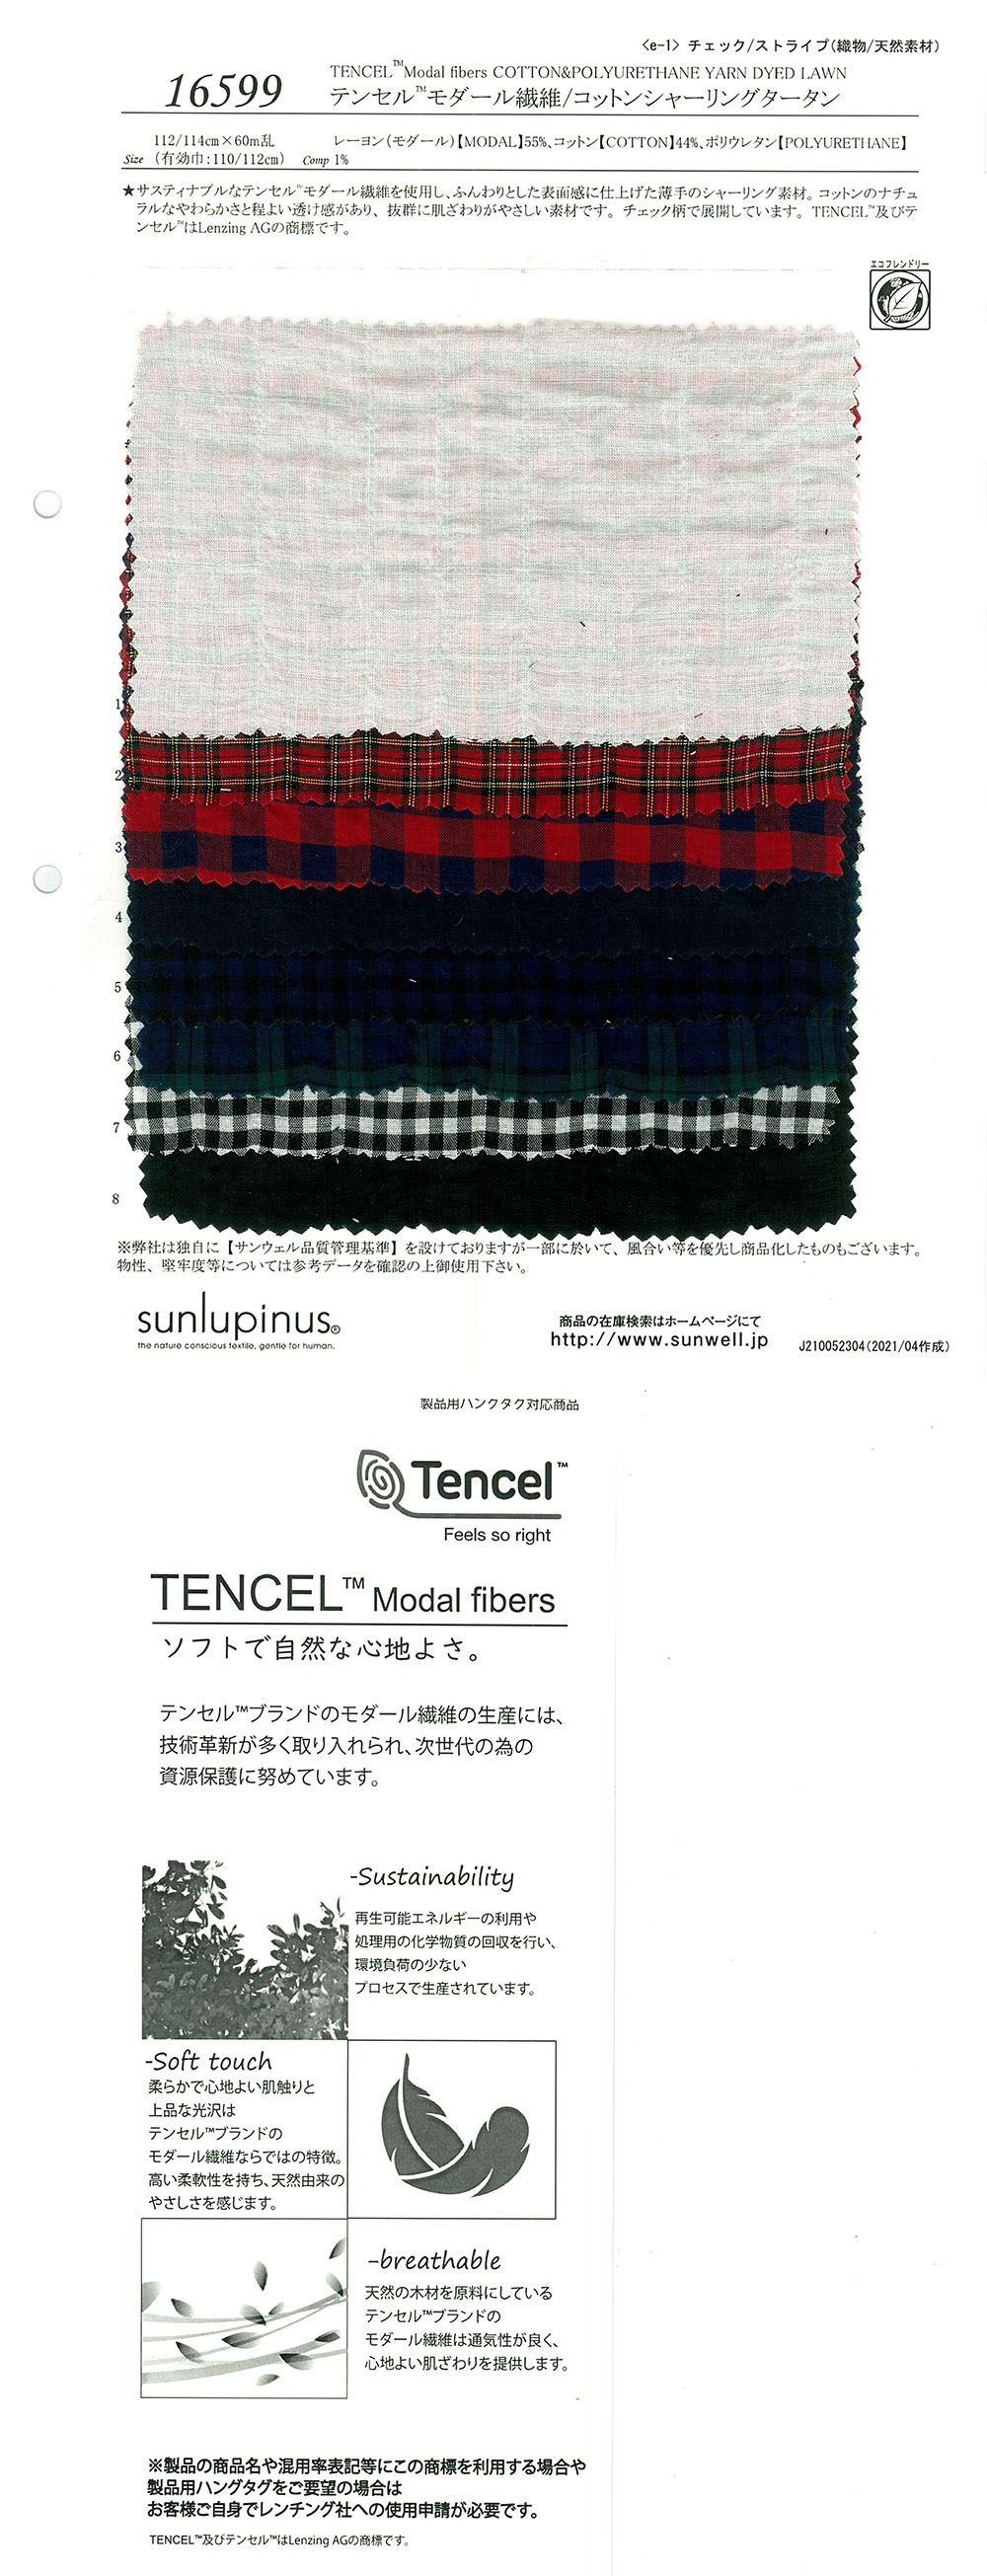 16599 テンセル(TM)モダール繊維/コットンシャーリングタータン[生地] SUNWELL(サンウェル)